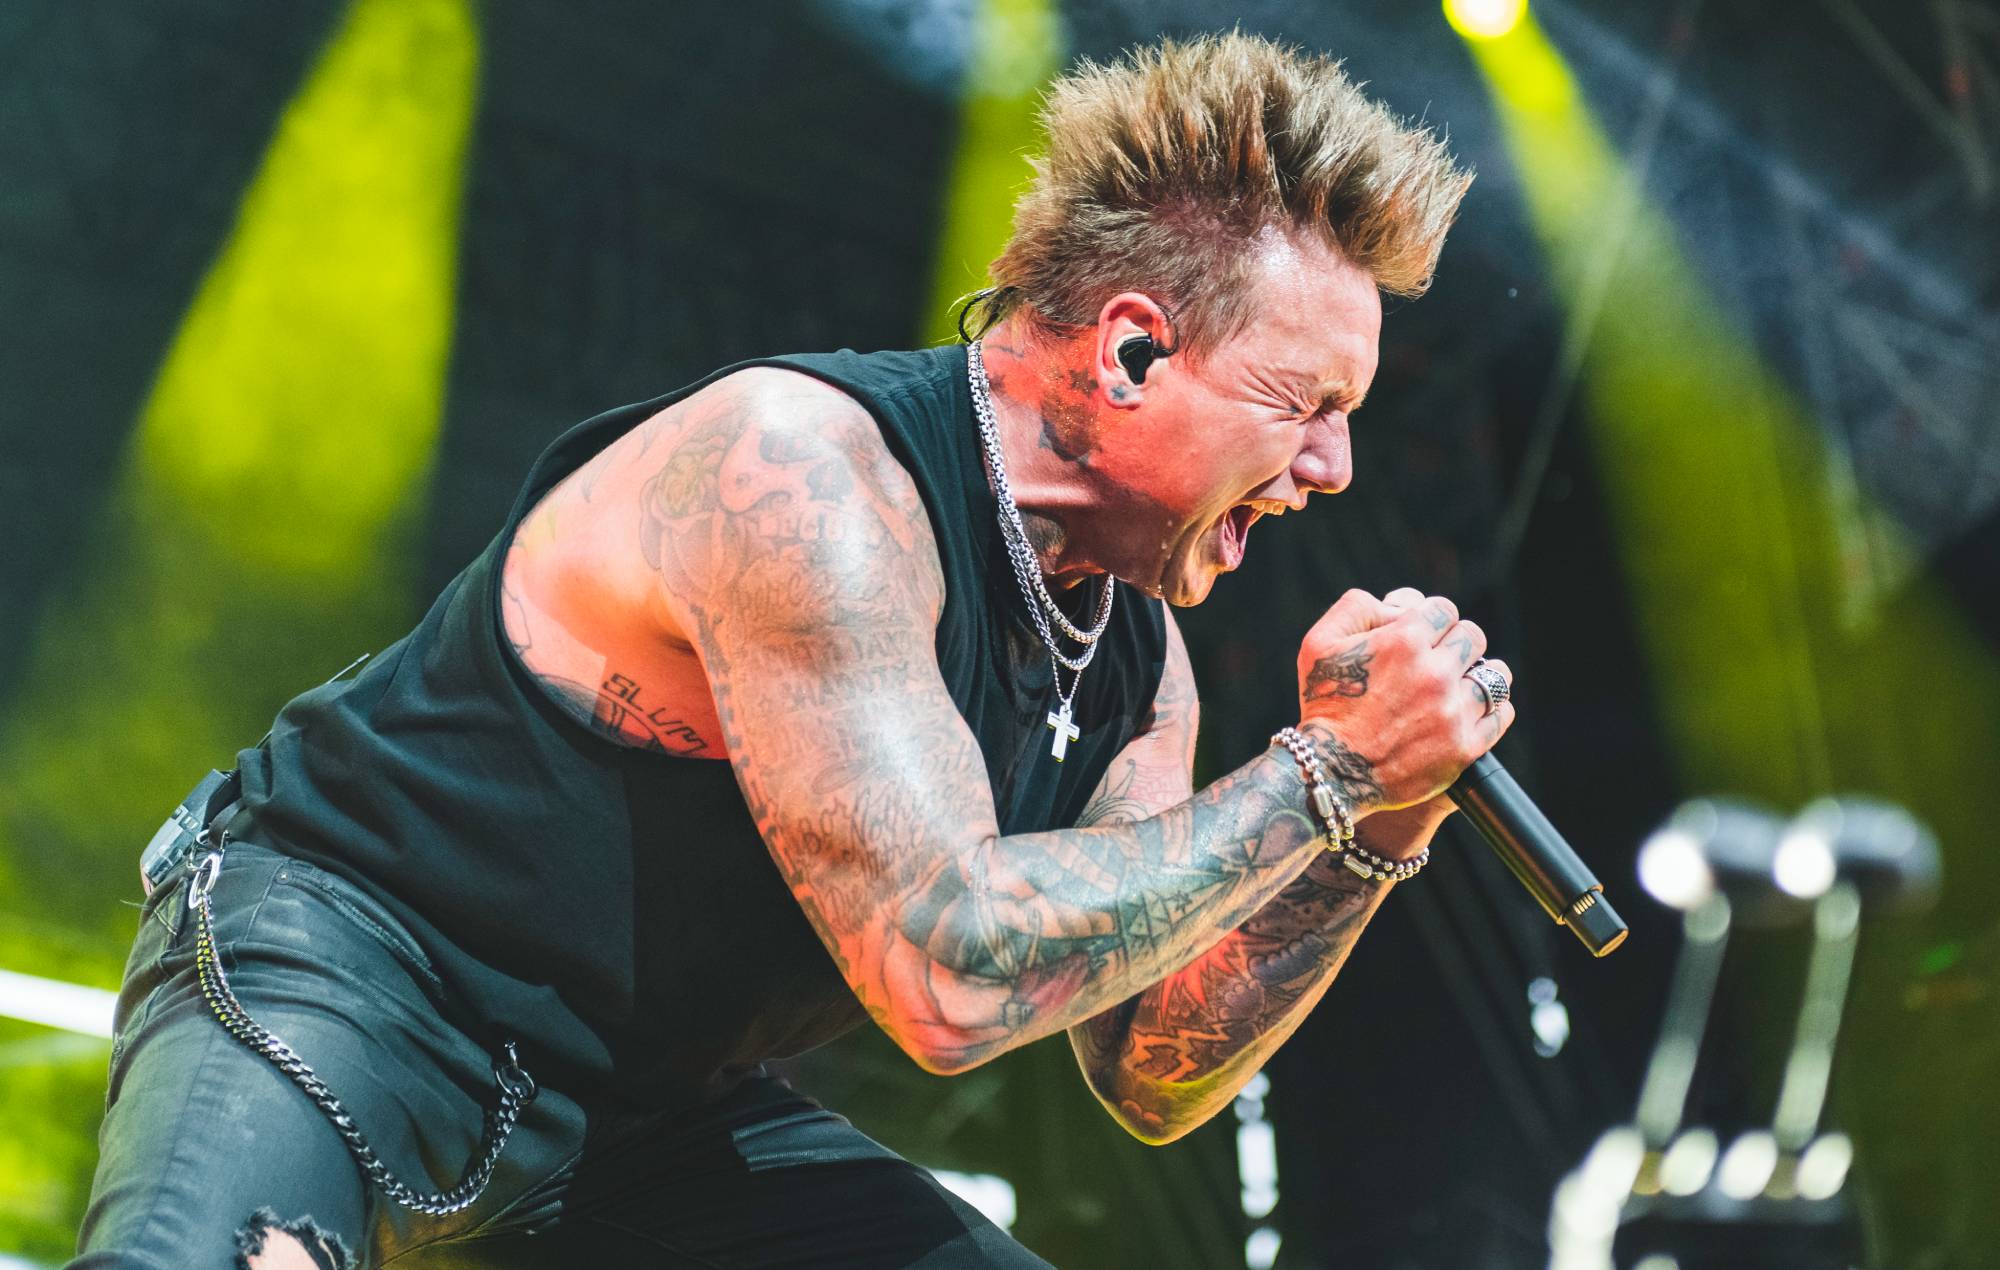 Papa Roach announce huge London show as part of European 25th anniversary tour